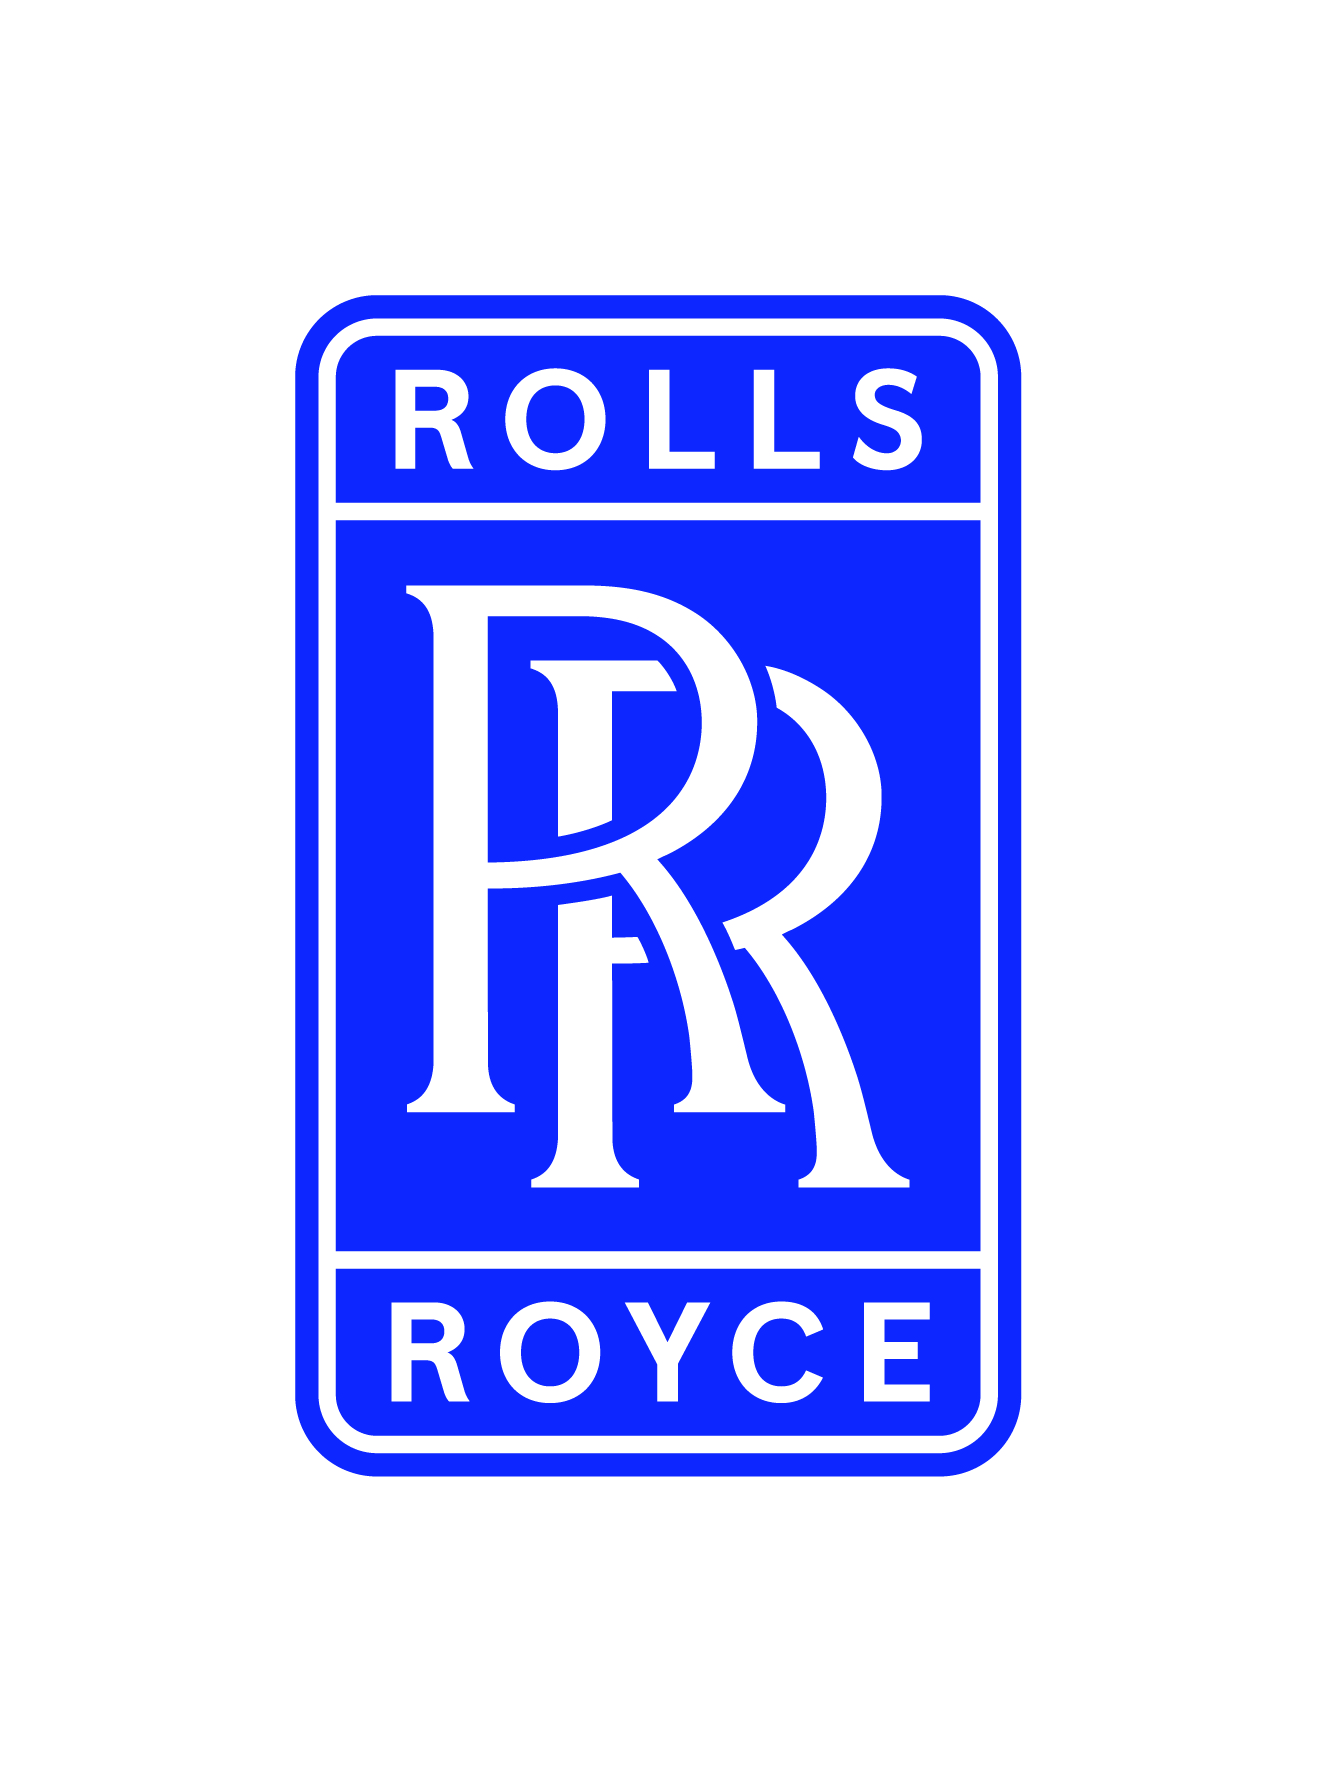 ROLLS-ROYCE CANADA